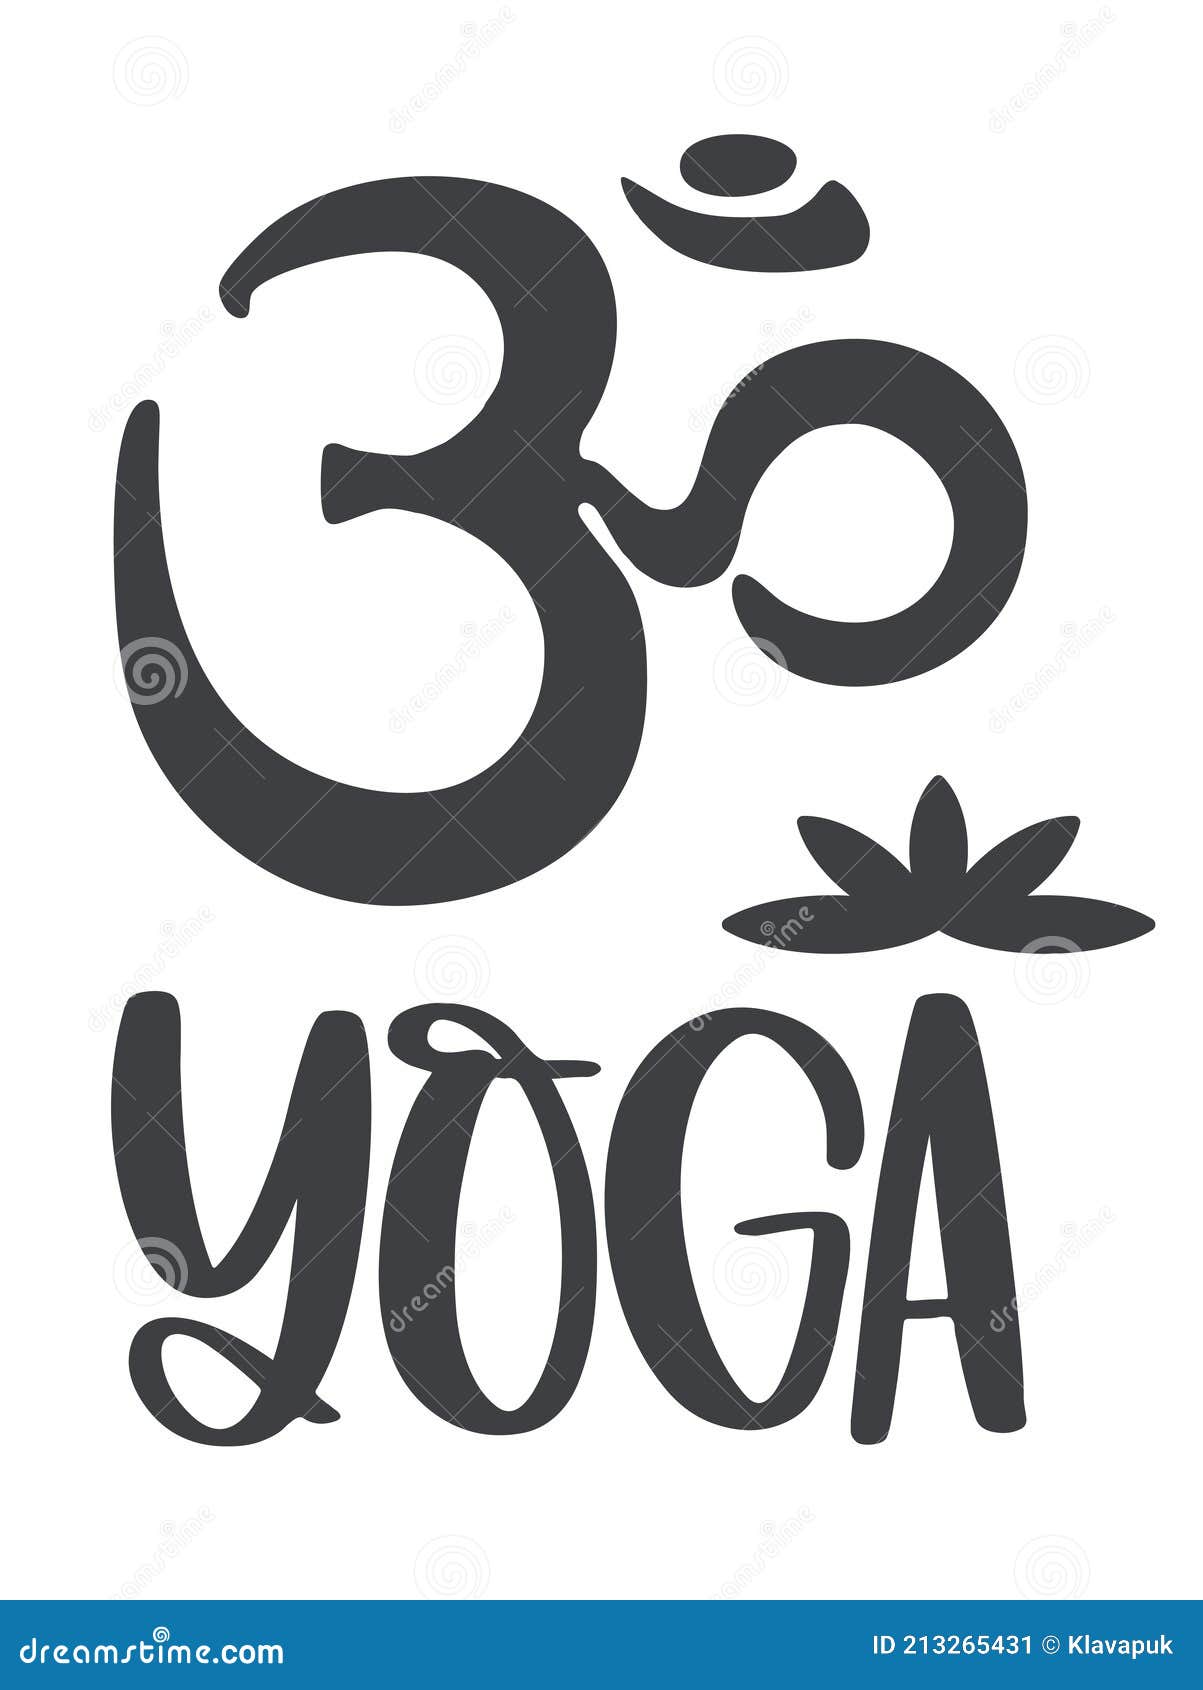 Símbolo Om E a Inscrição Yoga Com a Imagem De Uma Flor De Lótus. Ilustração  do Vetor - Ilustração de forma, caligrafia: 213265431